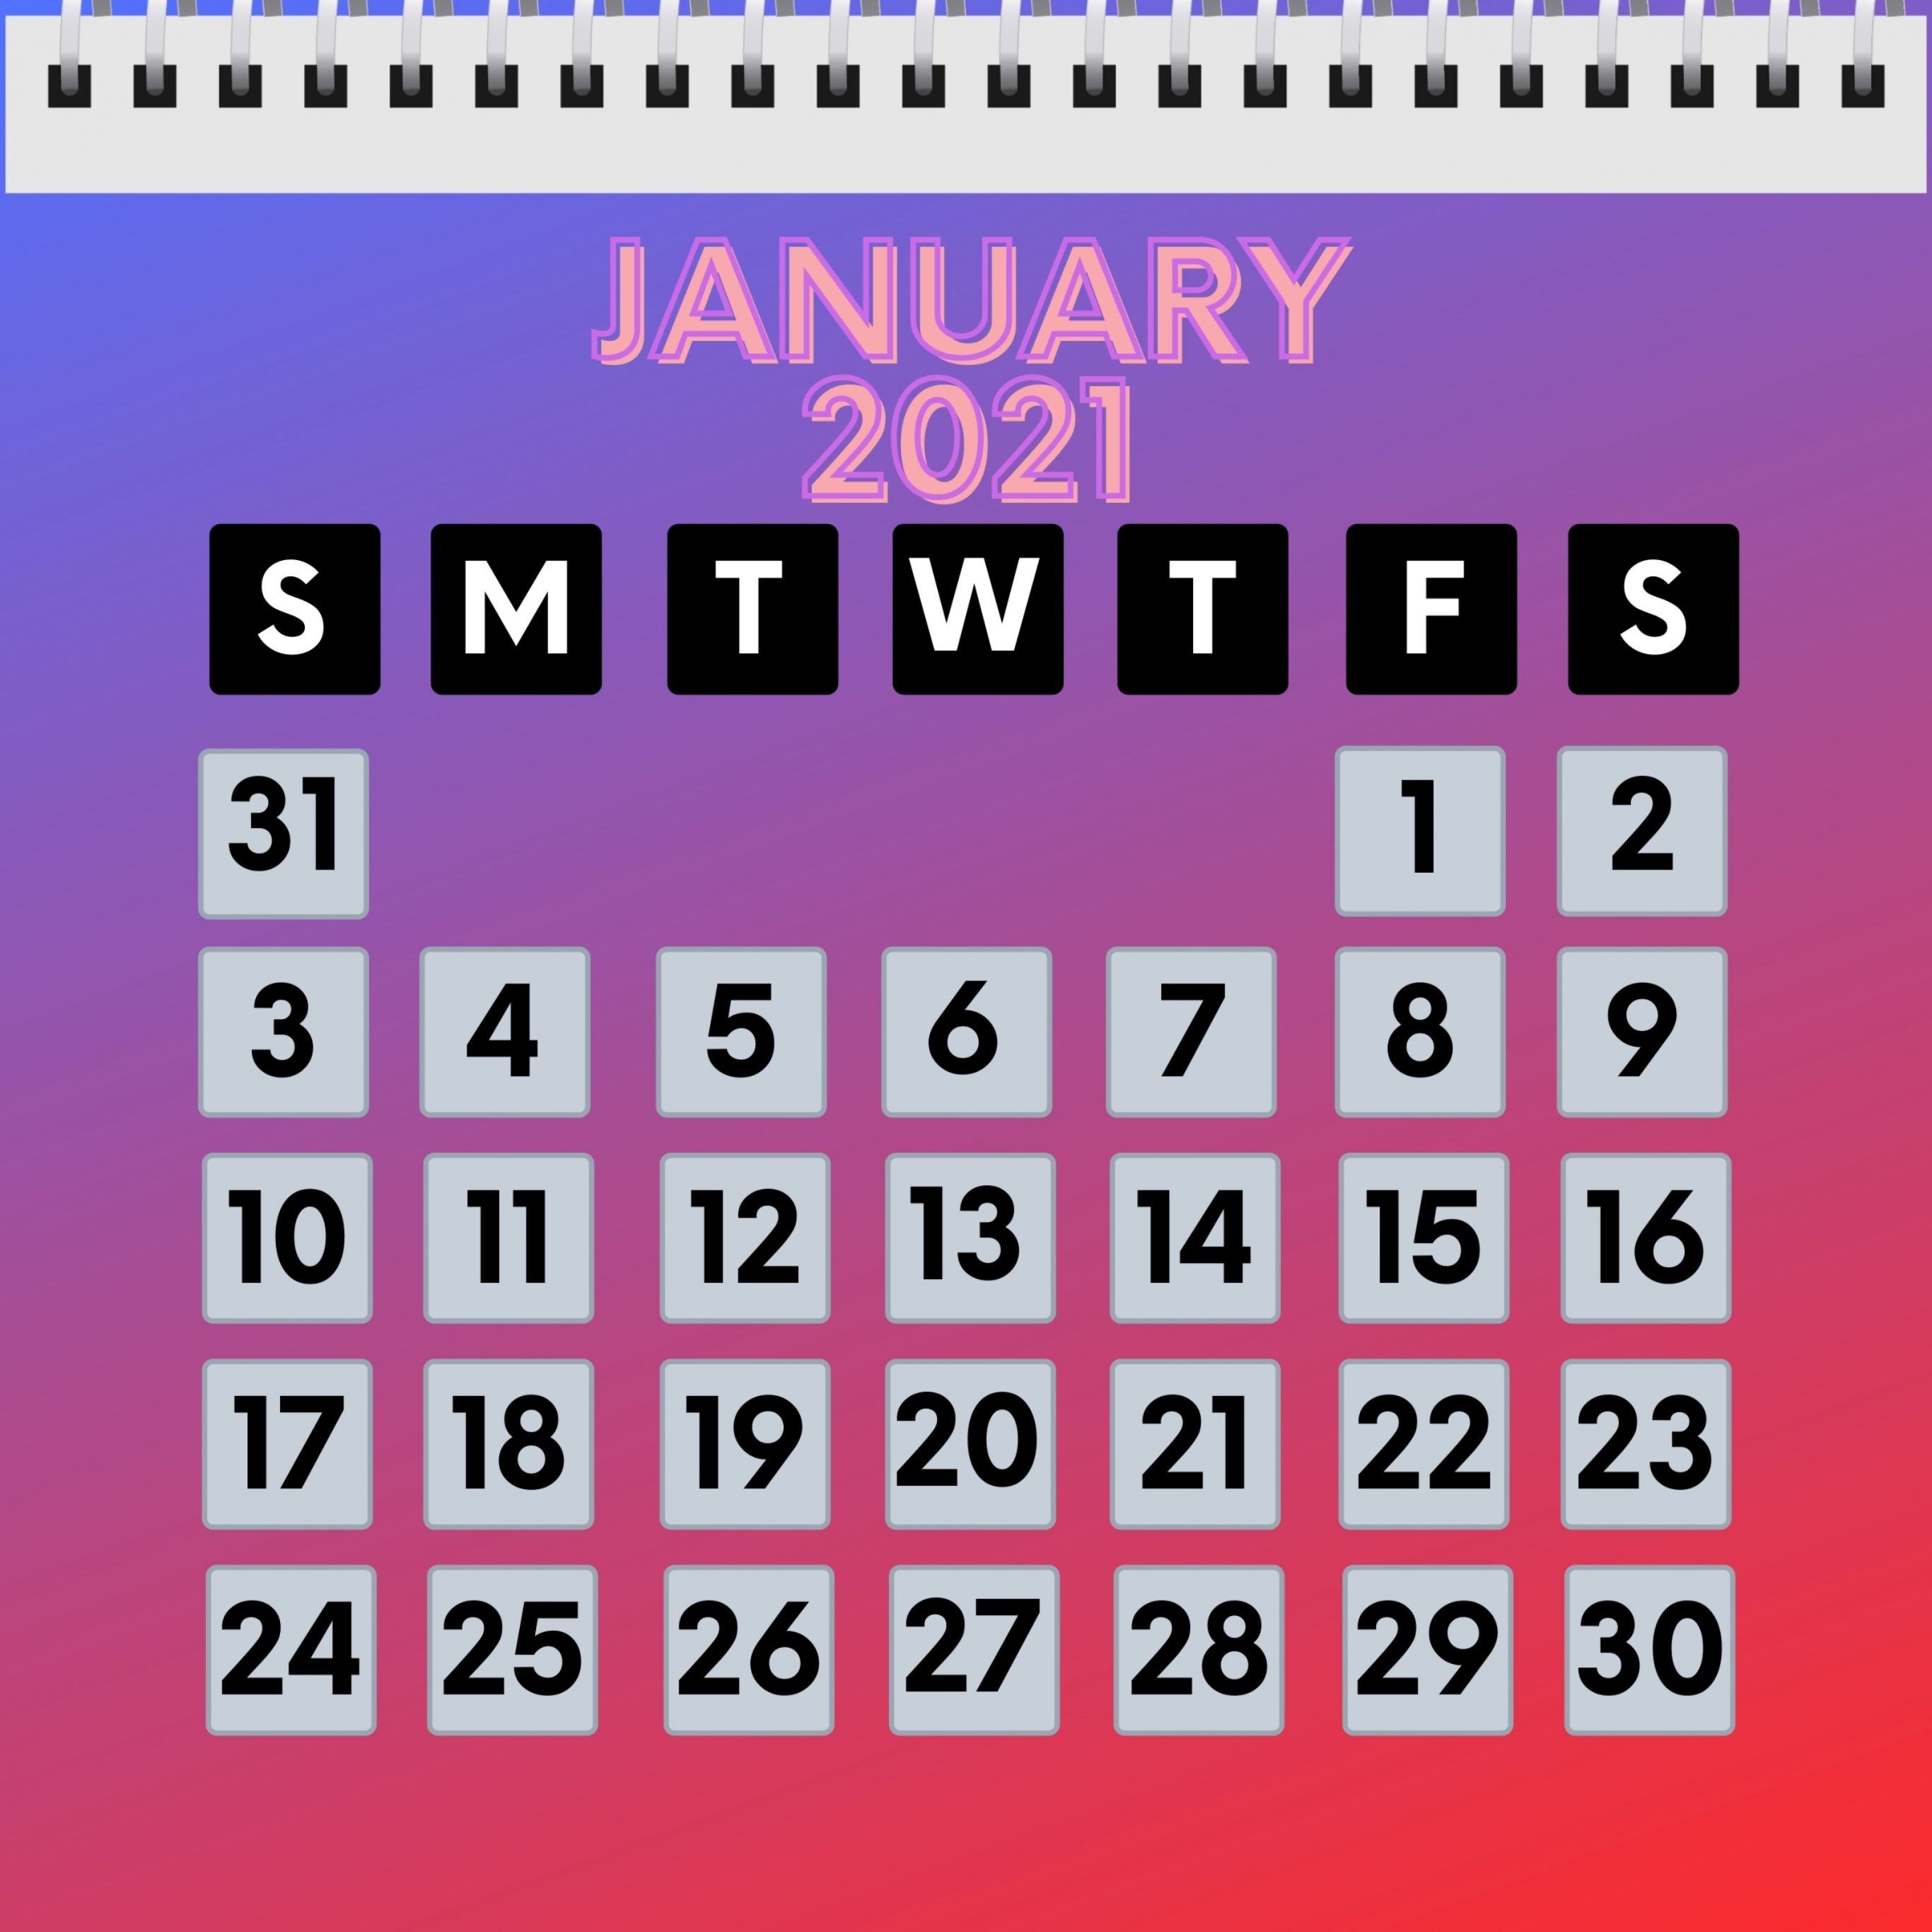 2732x2732 wallpapers 4k iPad Pro January 2021 Calendar iPad Wallpaper 2732x2732 pixels resolution